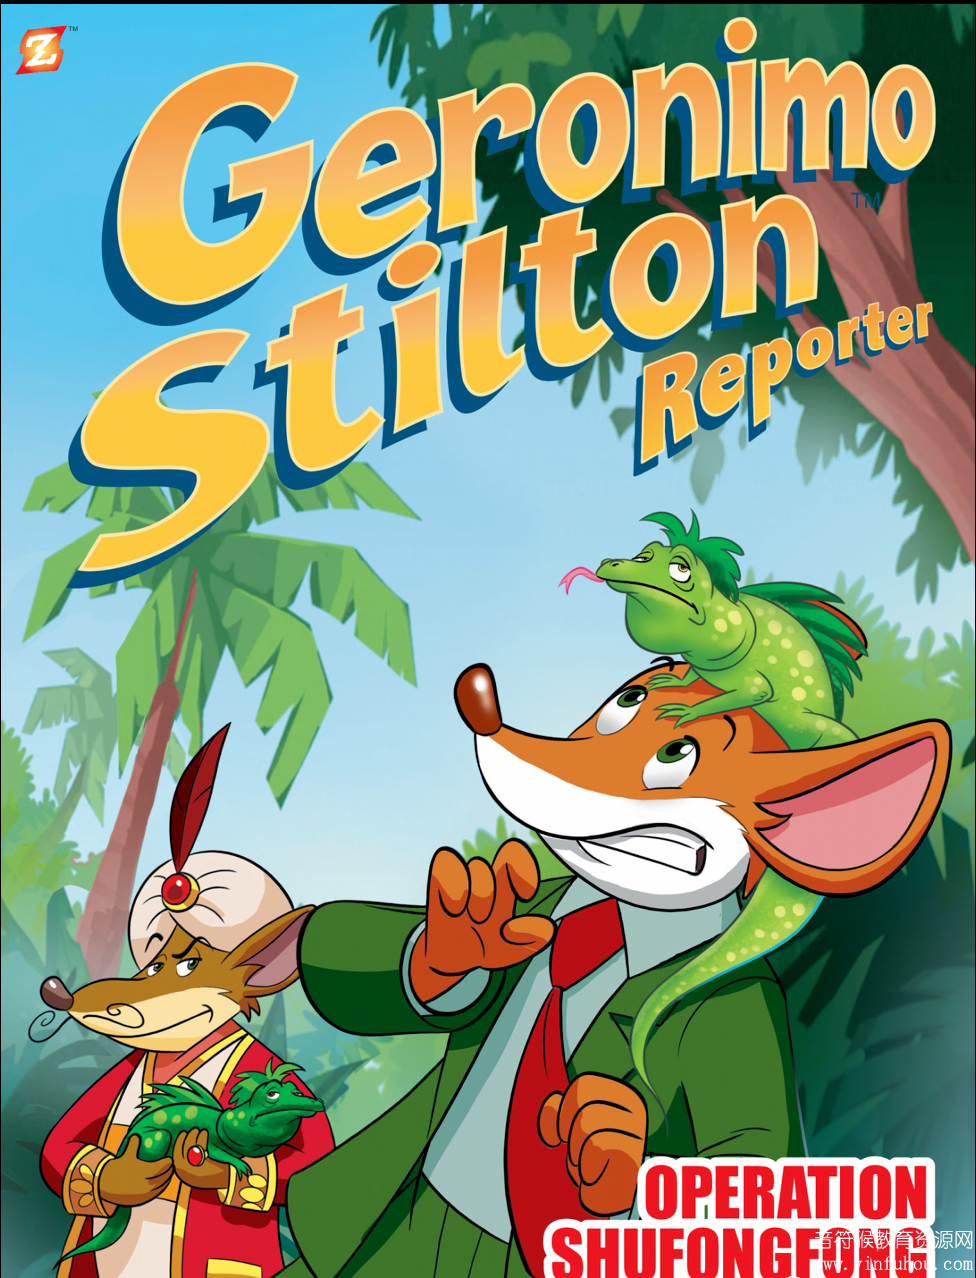 老鼠记者Geronimo Stilton Reporter 最新漫画绘本电子版10册